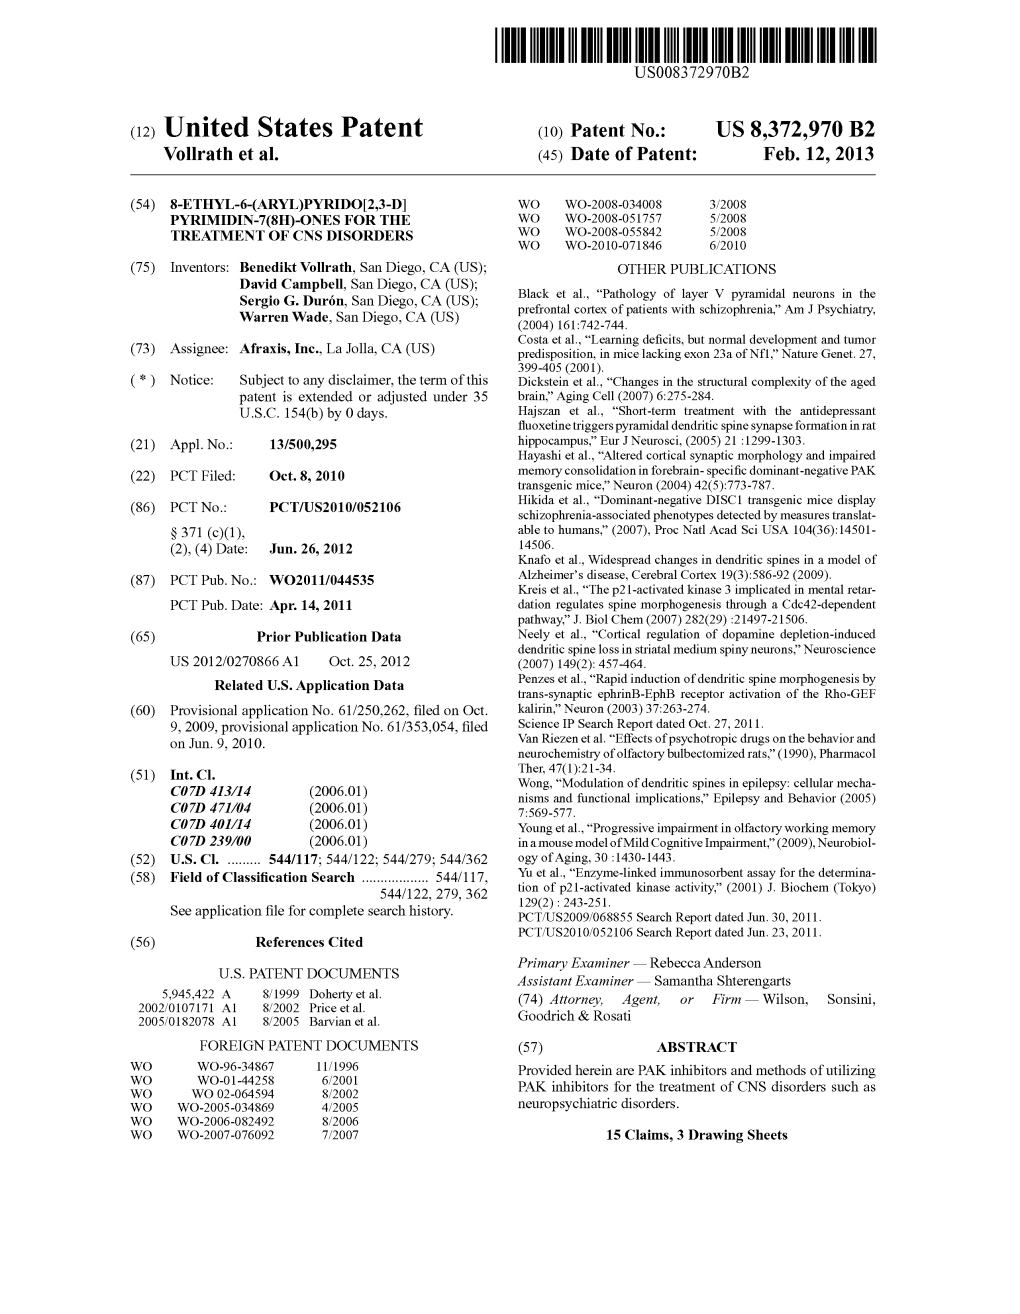 (12) United States Patent (10) Patent No.: US 8,372,970 B2 Vollrath Et Al